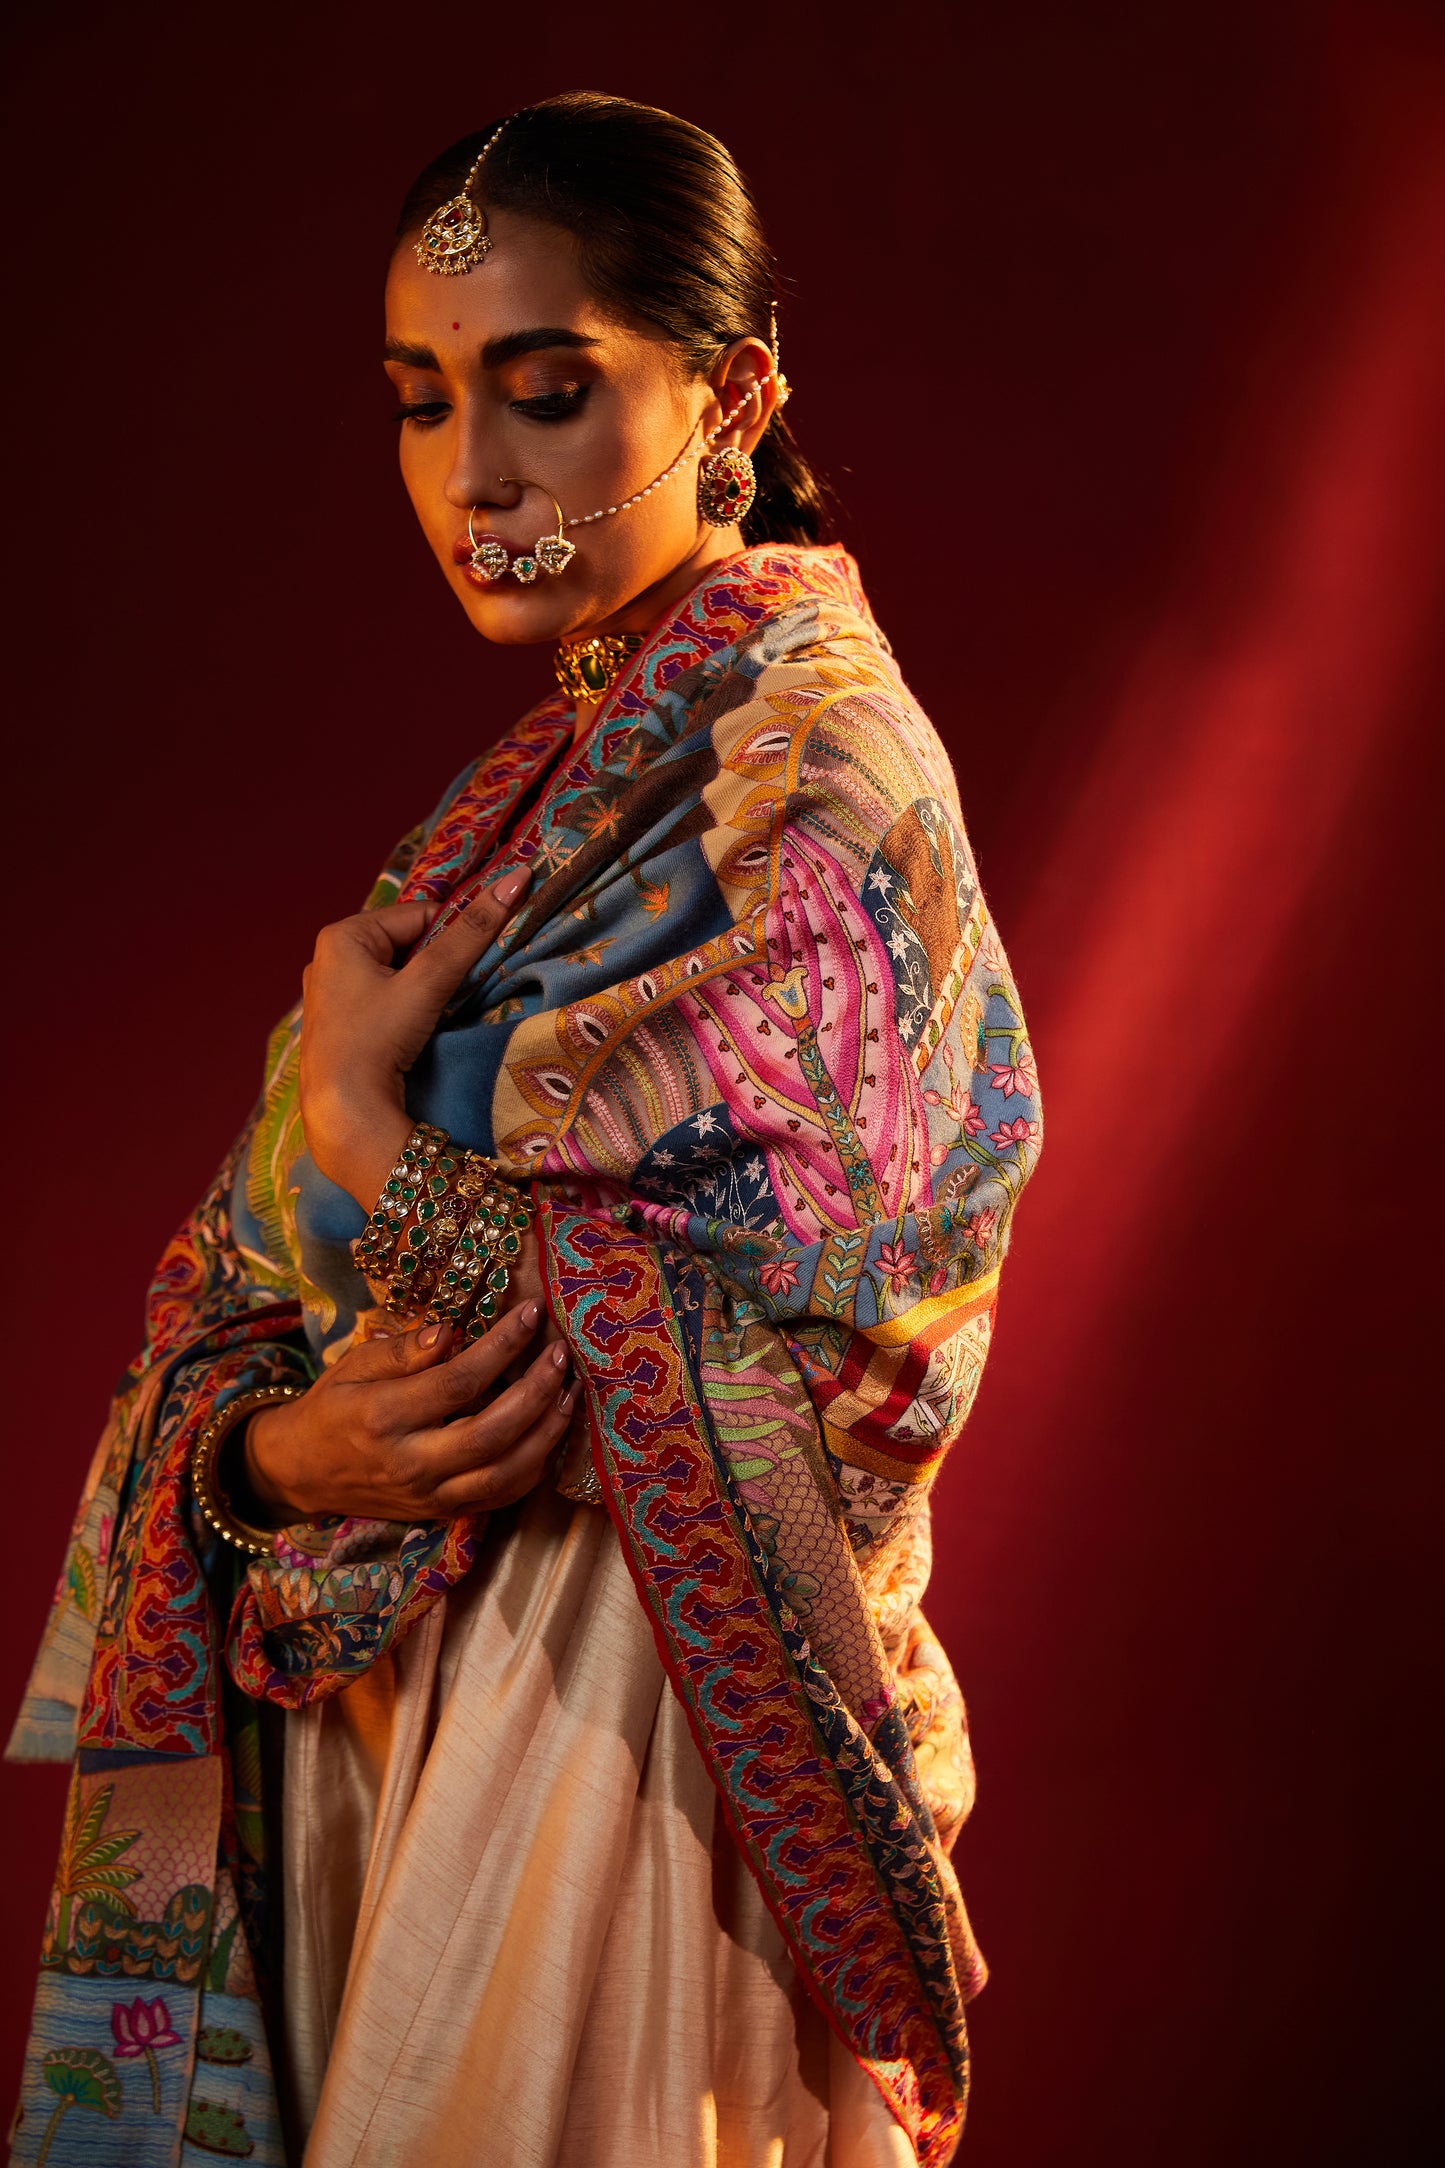 Model is wearing Nathdwaraji Pashmina Shawl from shaza.